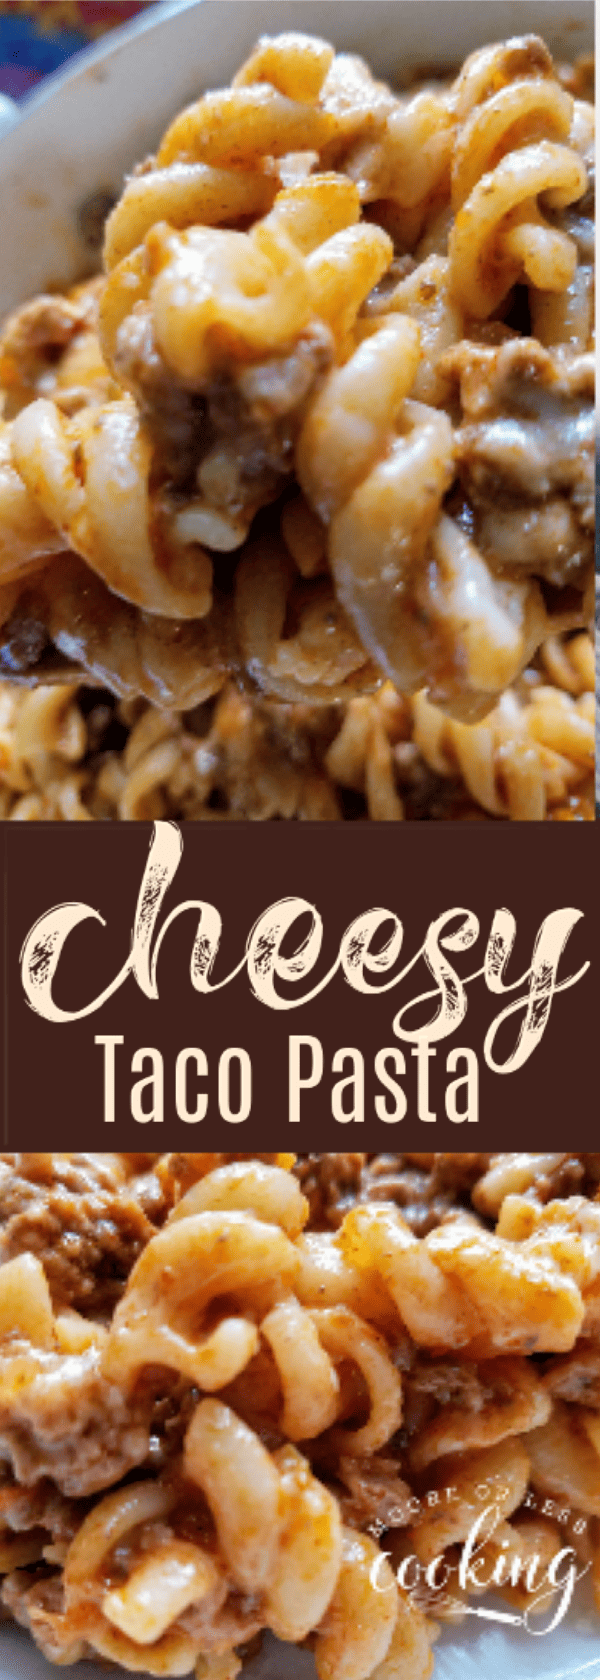 Pin cheesy Taco Pasta via @Mooreorlesscook